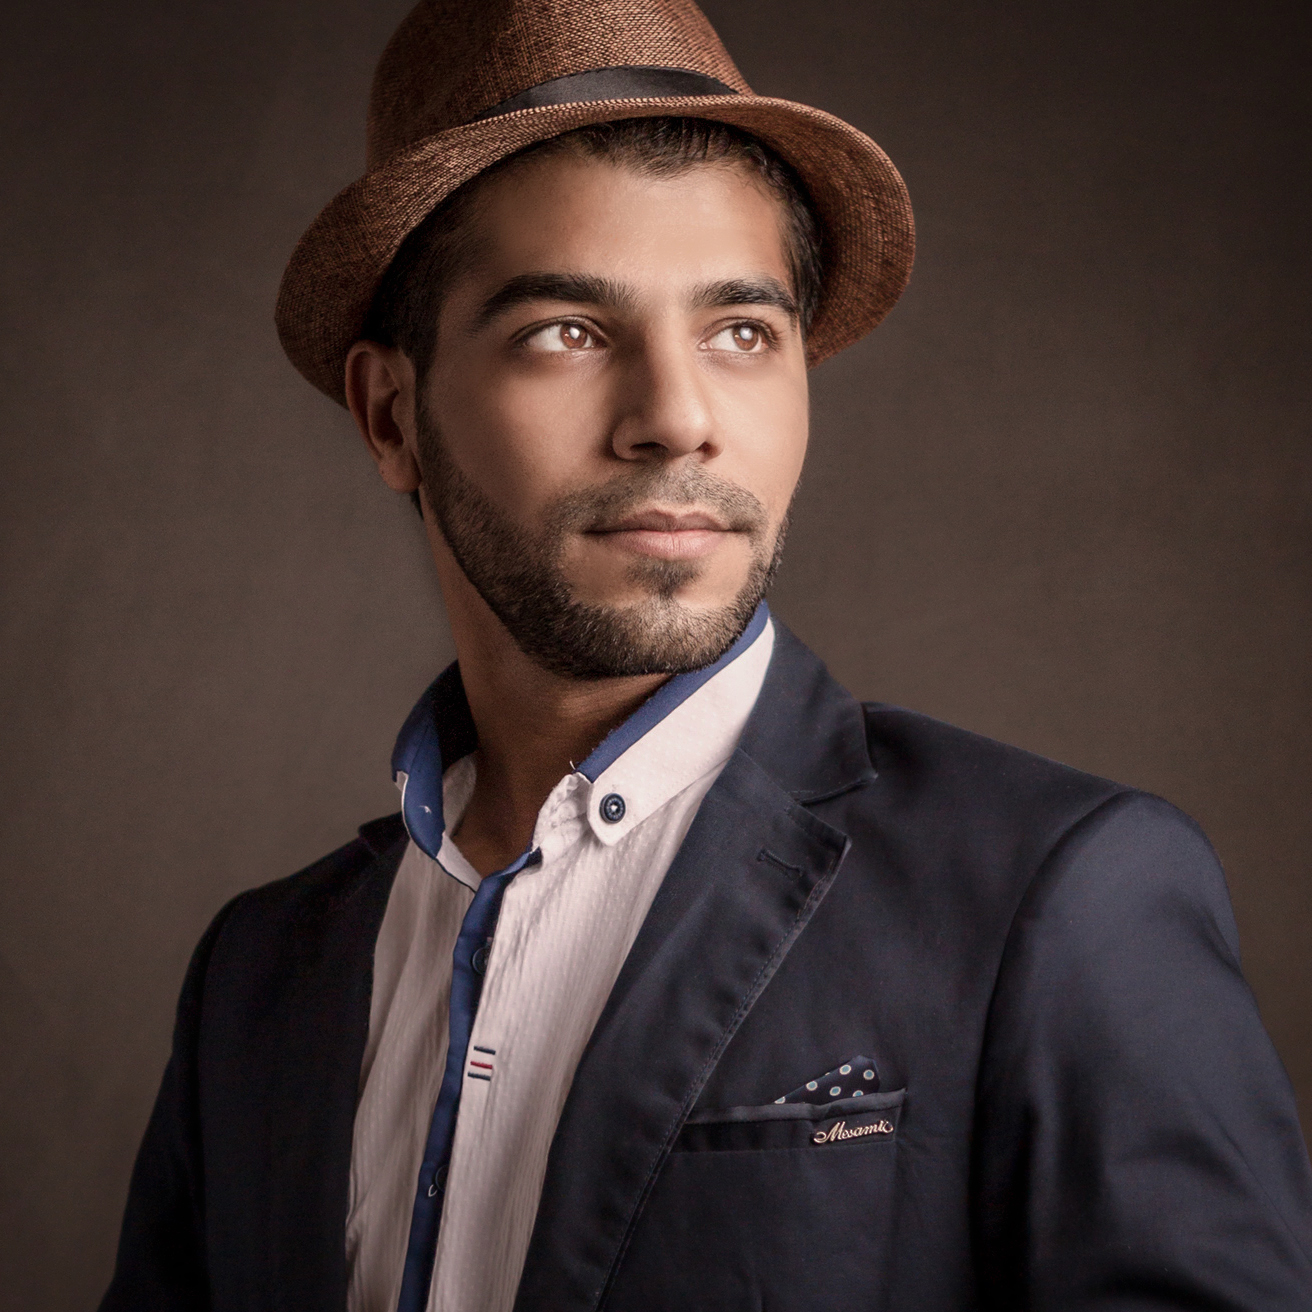 أحمد الفاخوري - مدرب واستشاري فني، مخرج وصانع أفلام، مصور ومونتير، مصمم جرافيك.